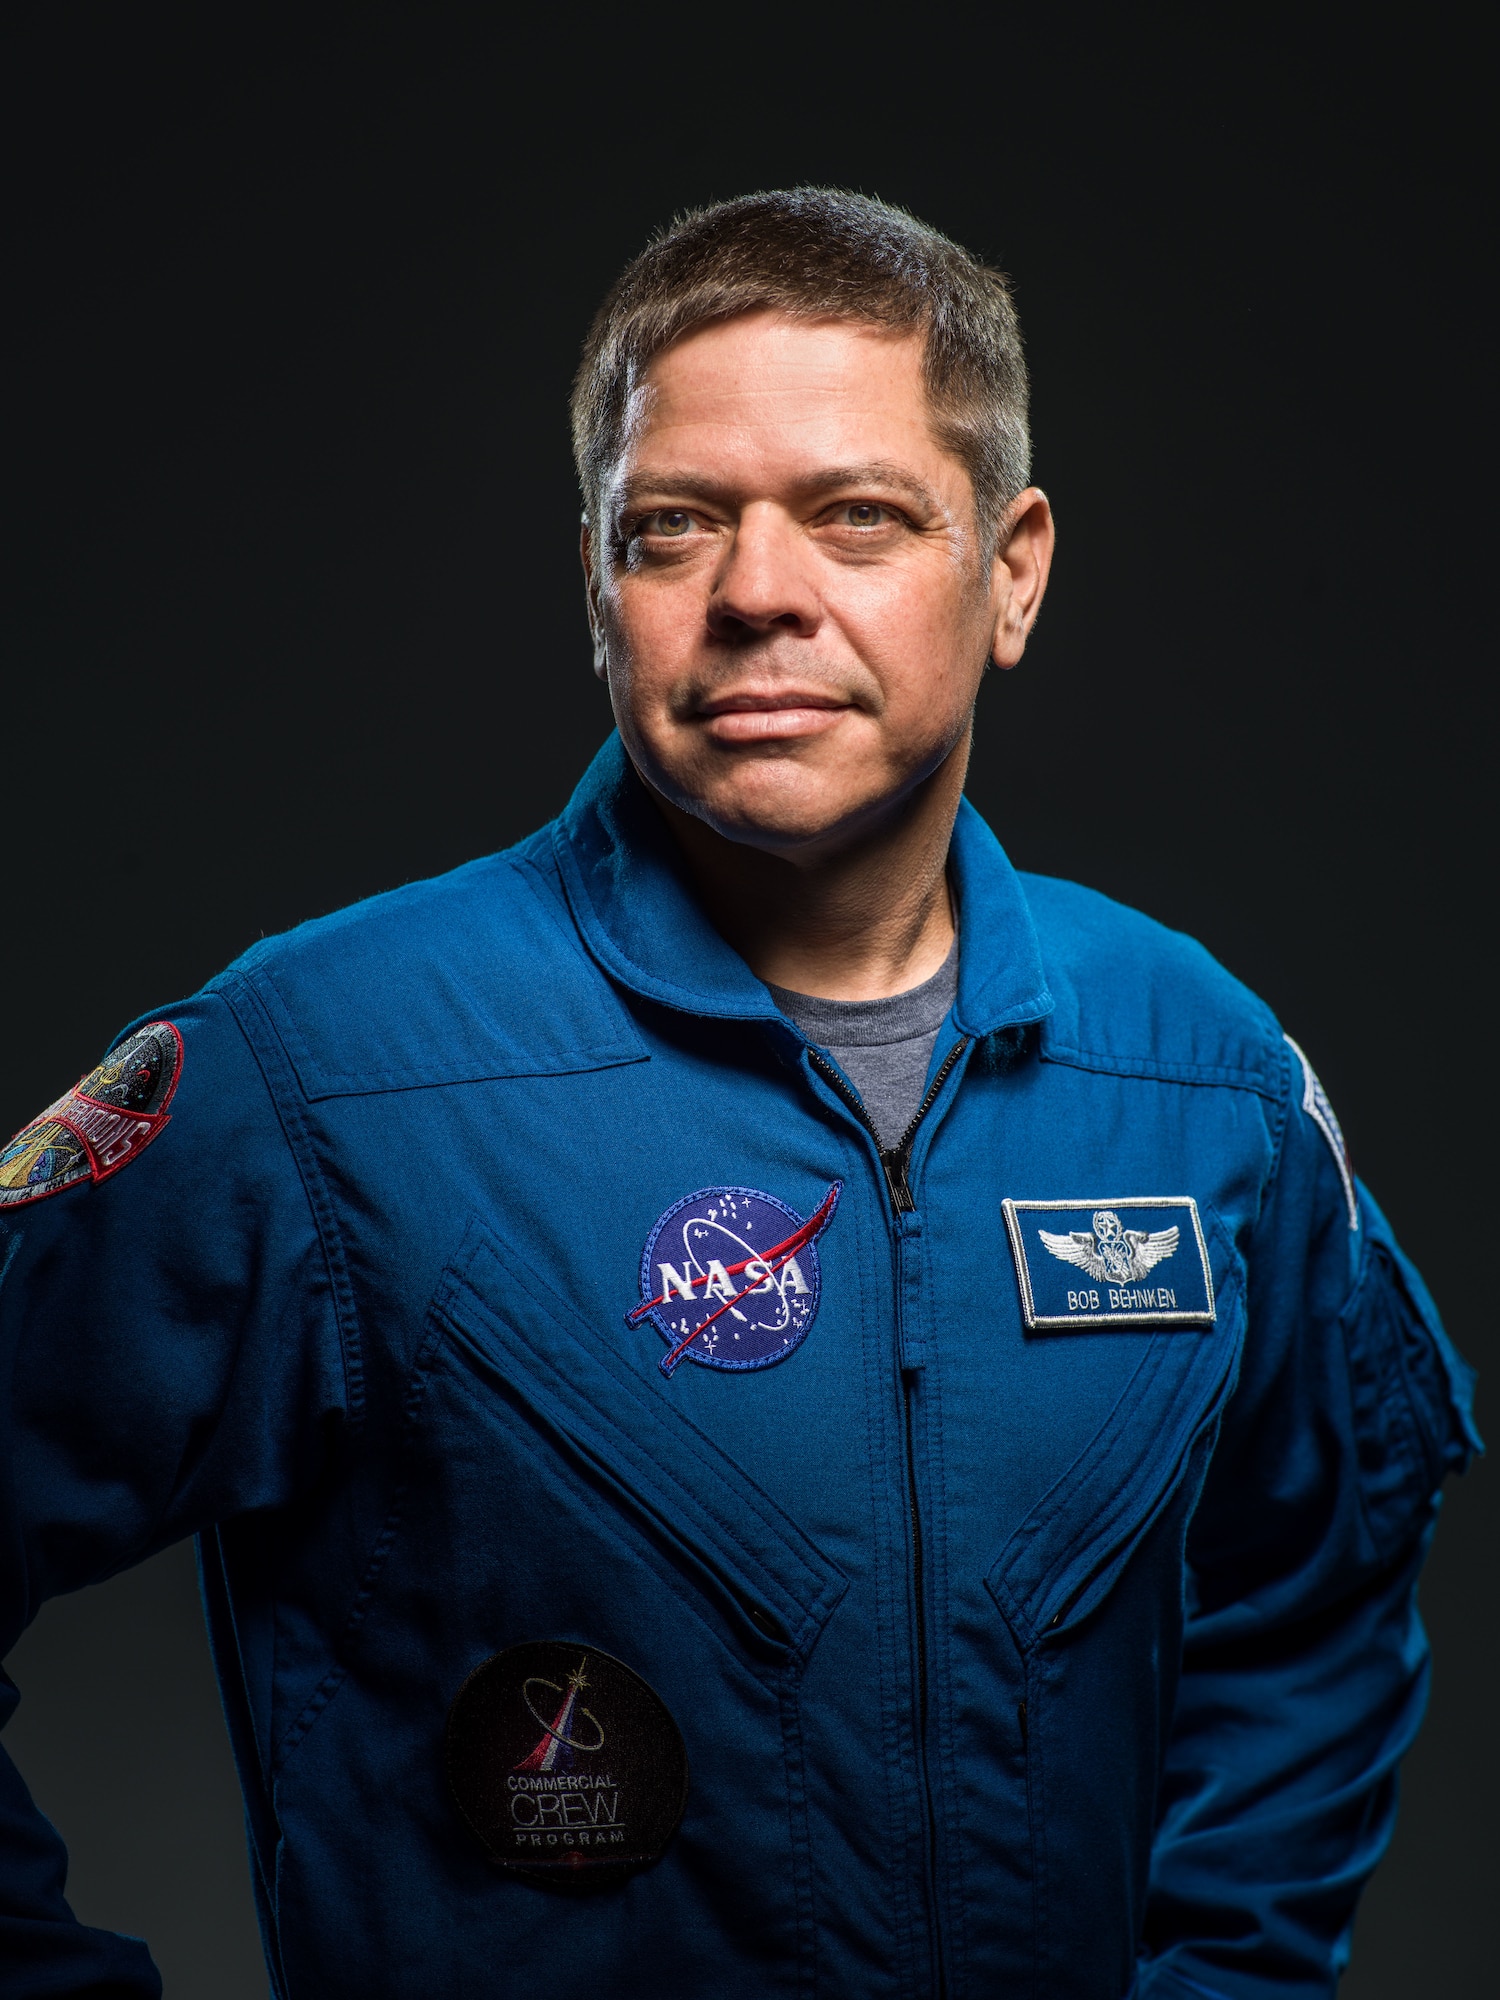 Official NASA/Commercial Crew Portrait - Robert "Bob" Behnken.  Photo Date: July 27, 2018.  Location: Building 8, Room 183 - Photo Studio.  Photographer: Robert Markowitz